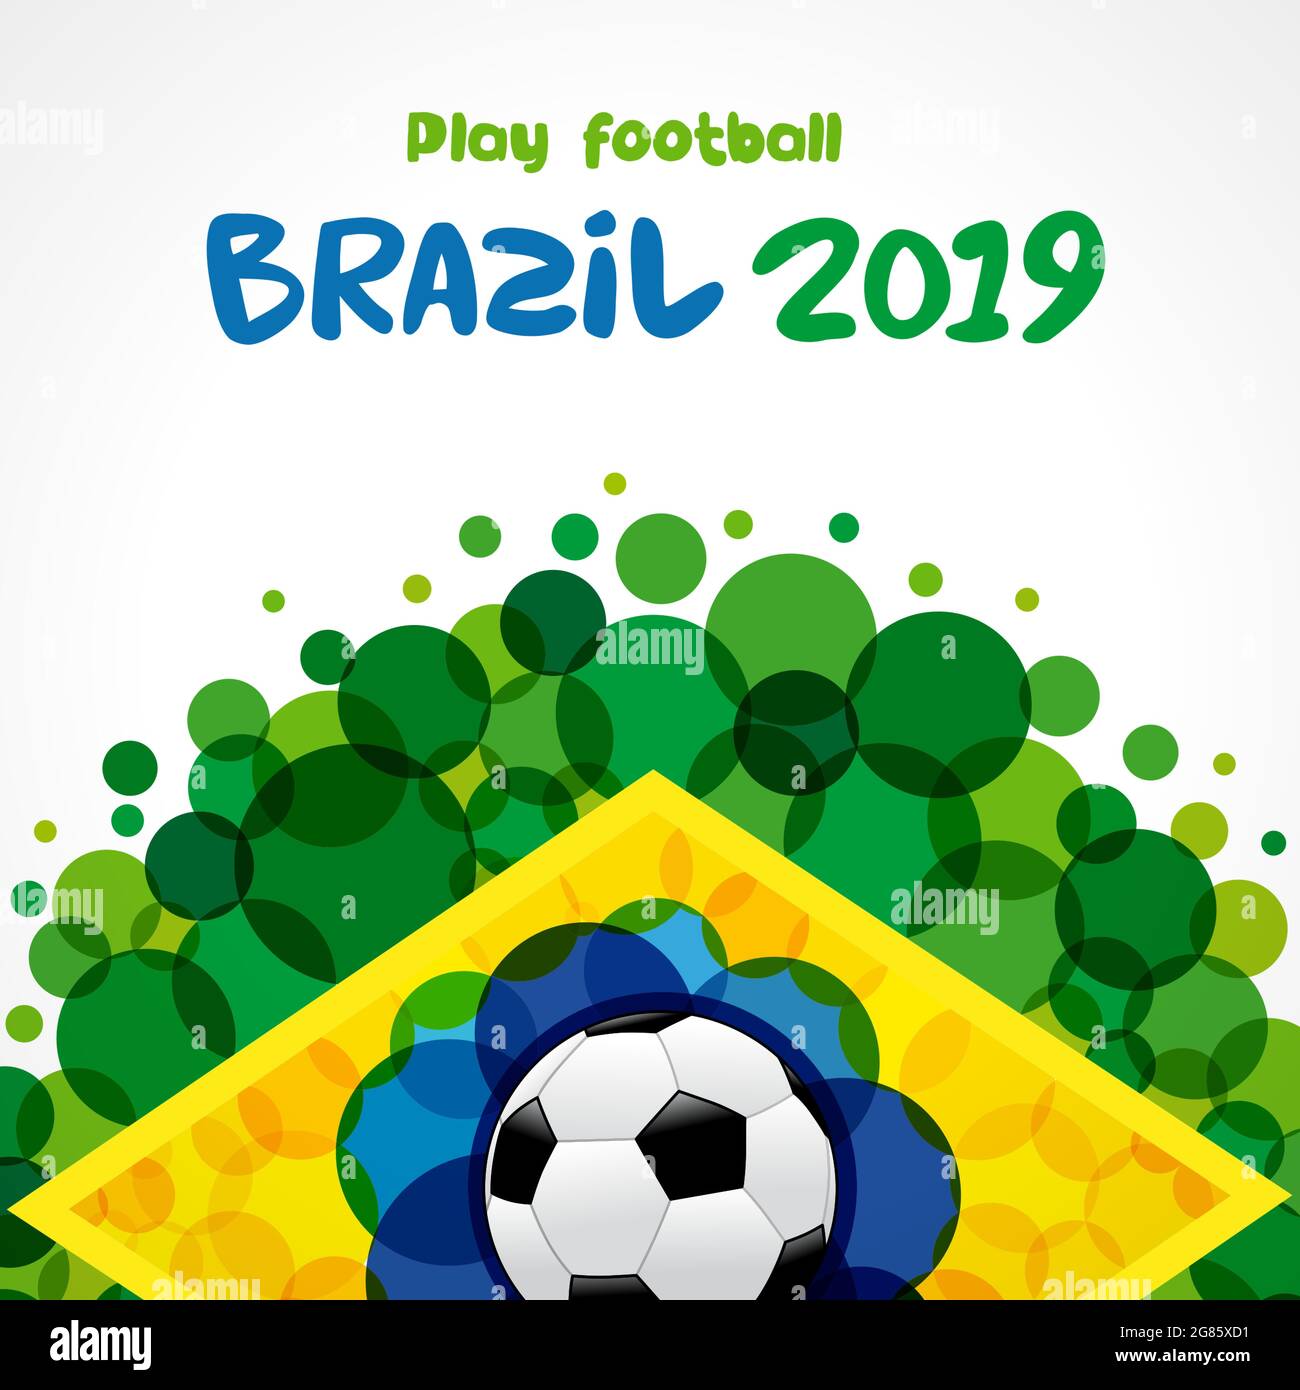 Benvenuti in Brasile copertina idea. Elementi con bandiera brasiliana con moderna struttura a bolle. Concetto creativo nazionale di fondo. Desi grafico astratto isolato Illustrazione Vettoriale